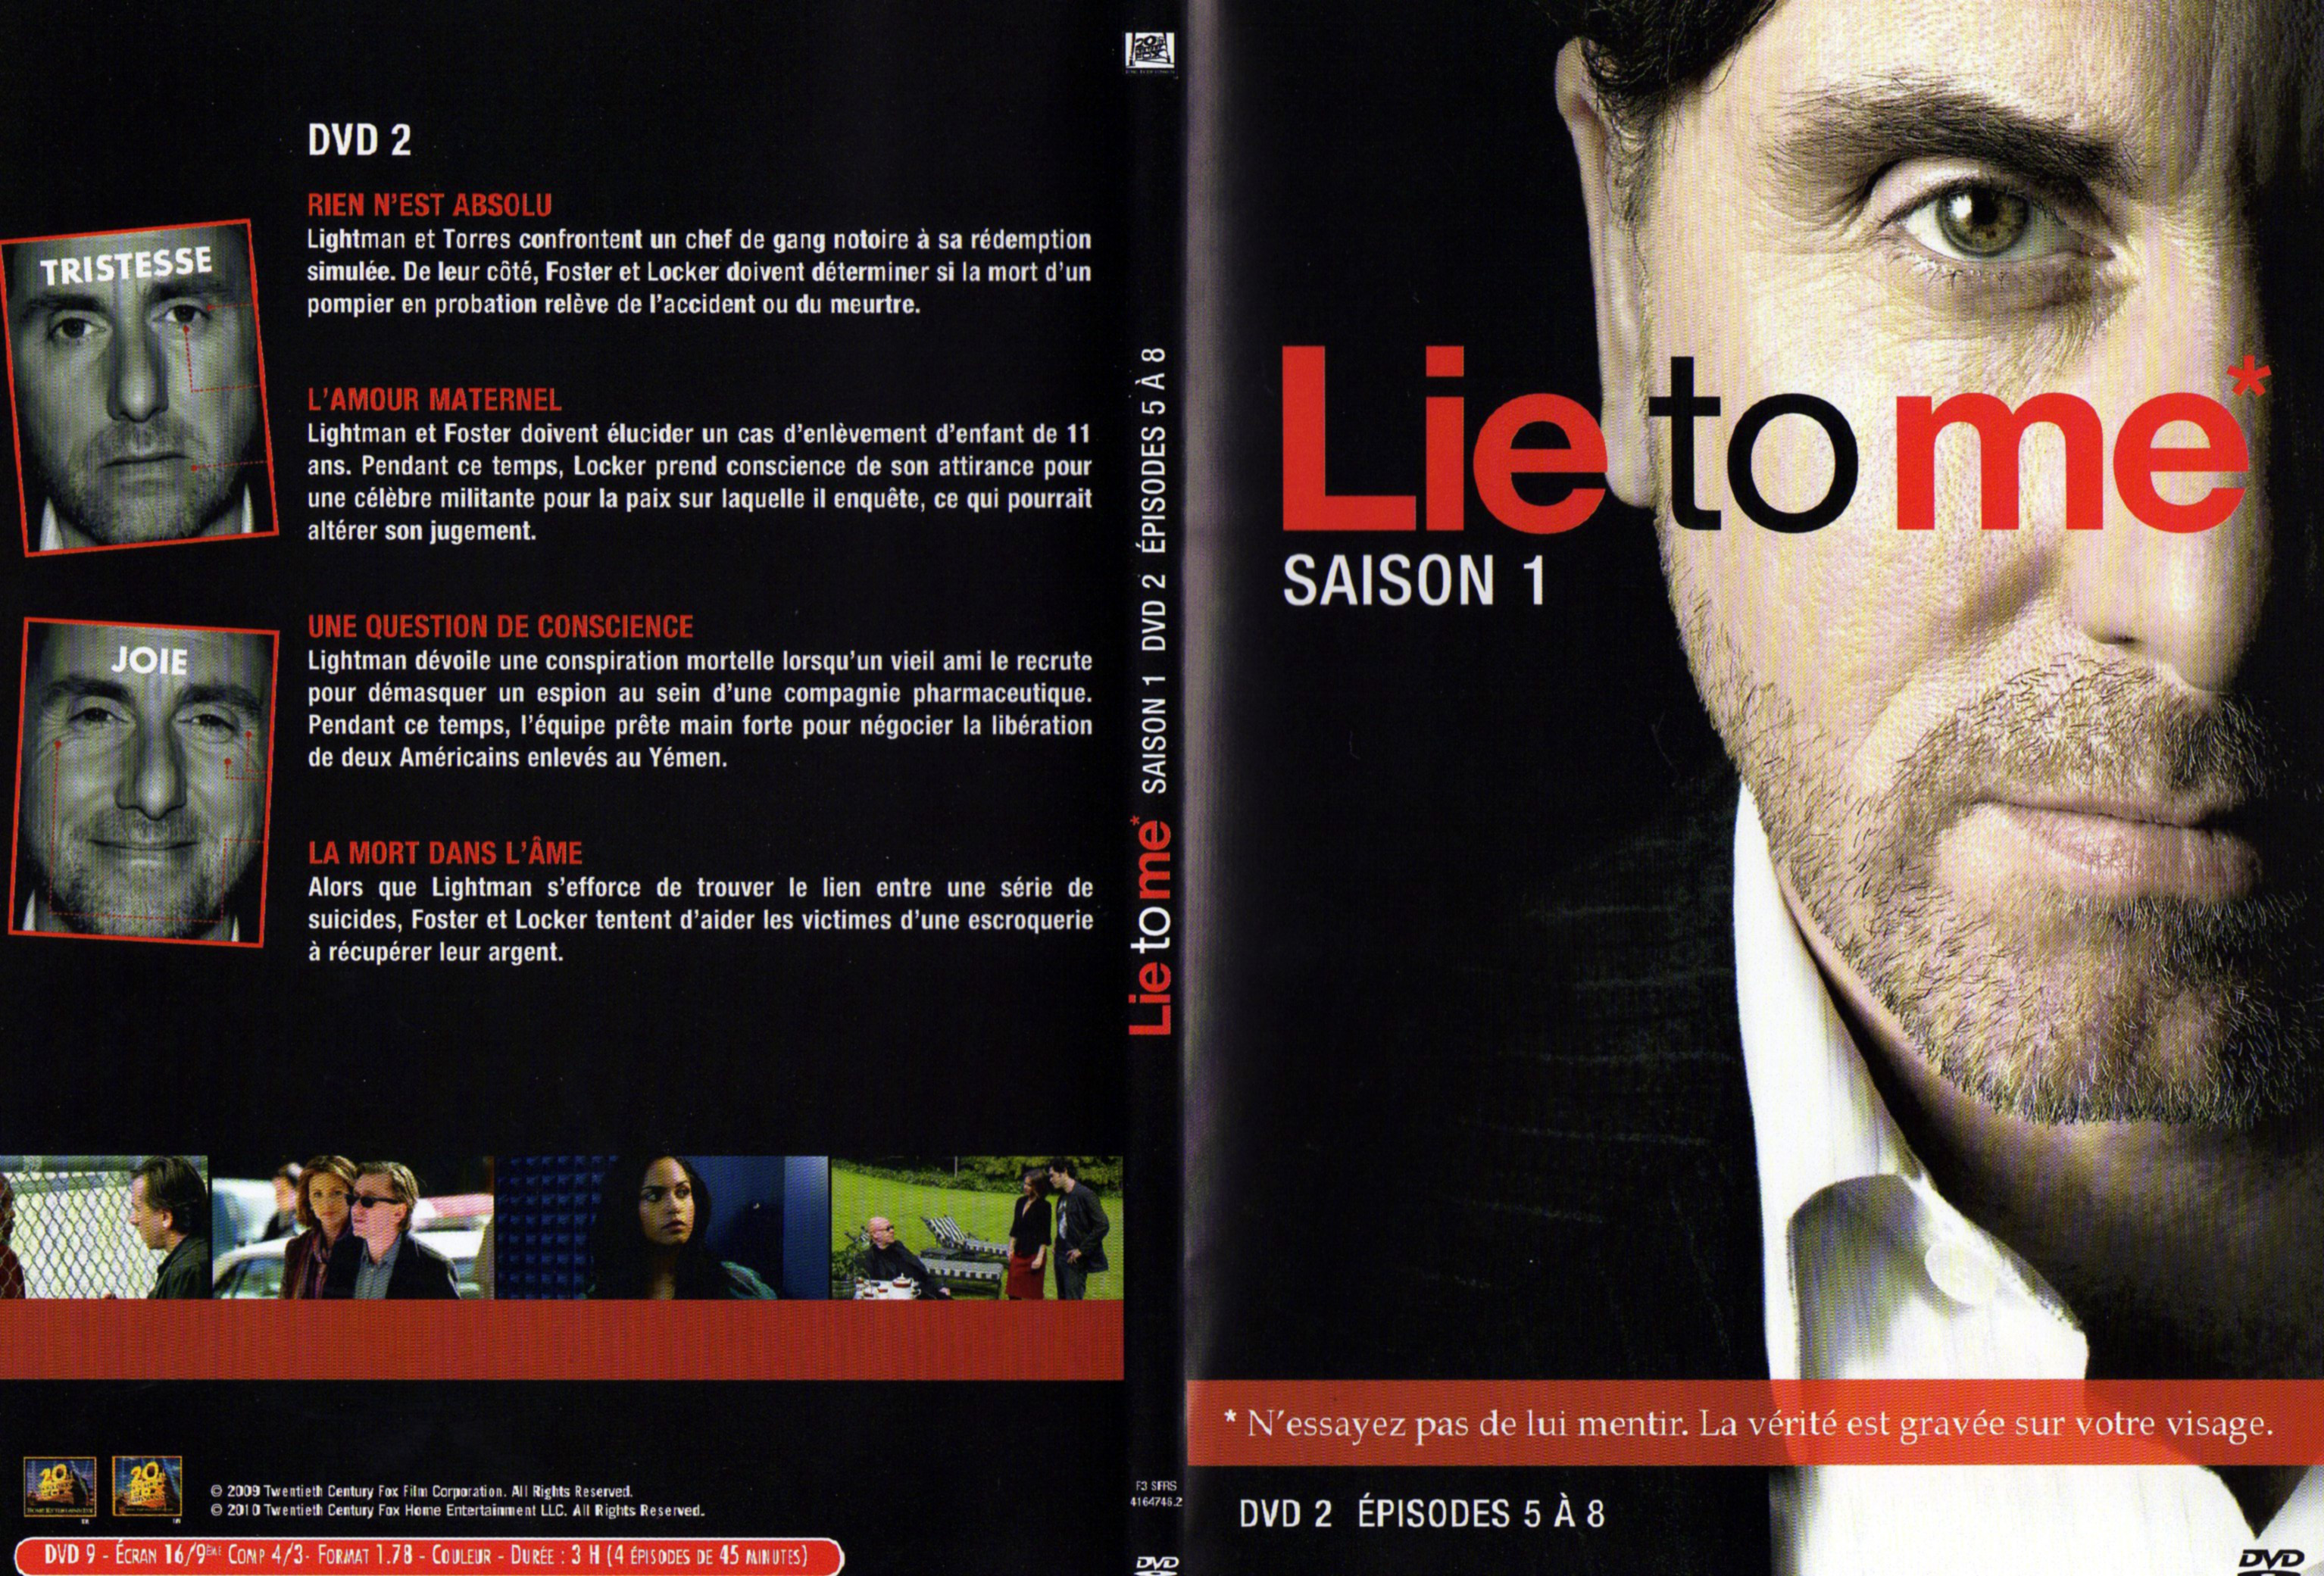 Jaquette DVD Lie to me Saison 1 DVD 2